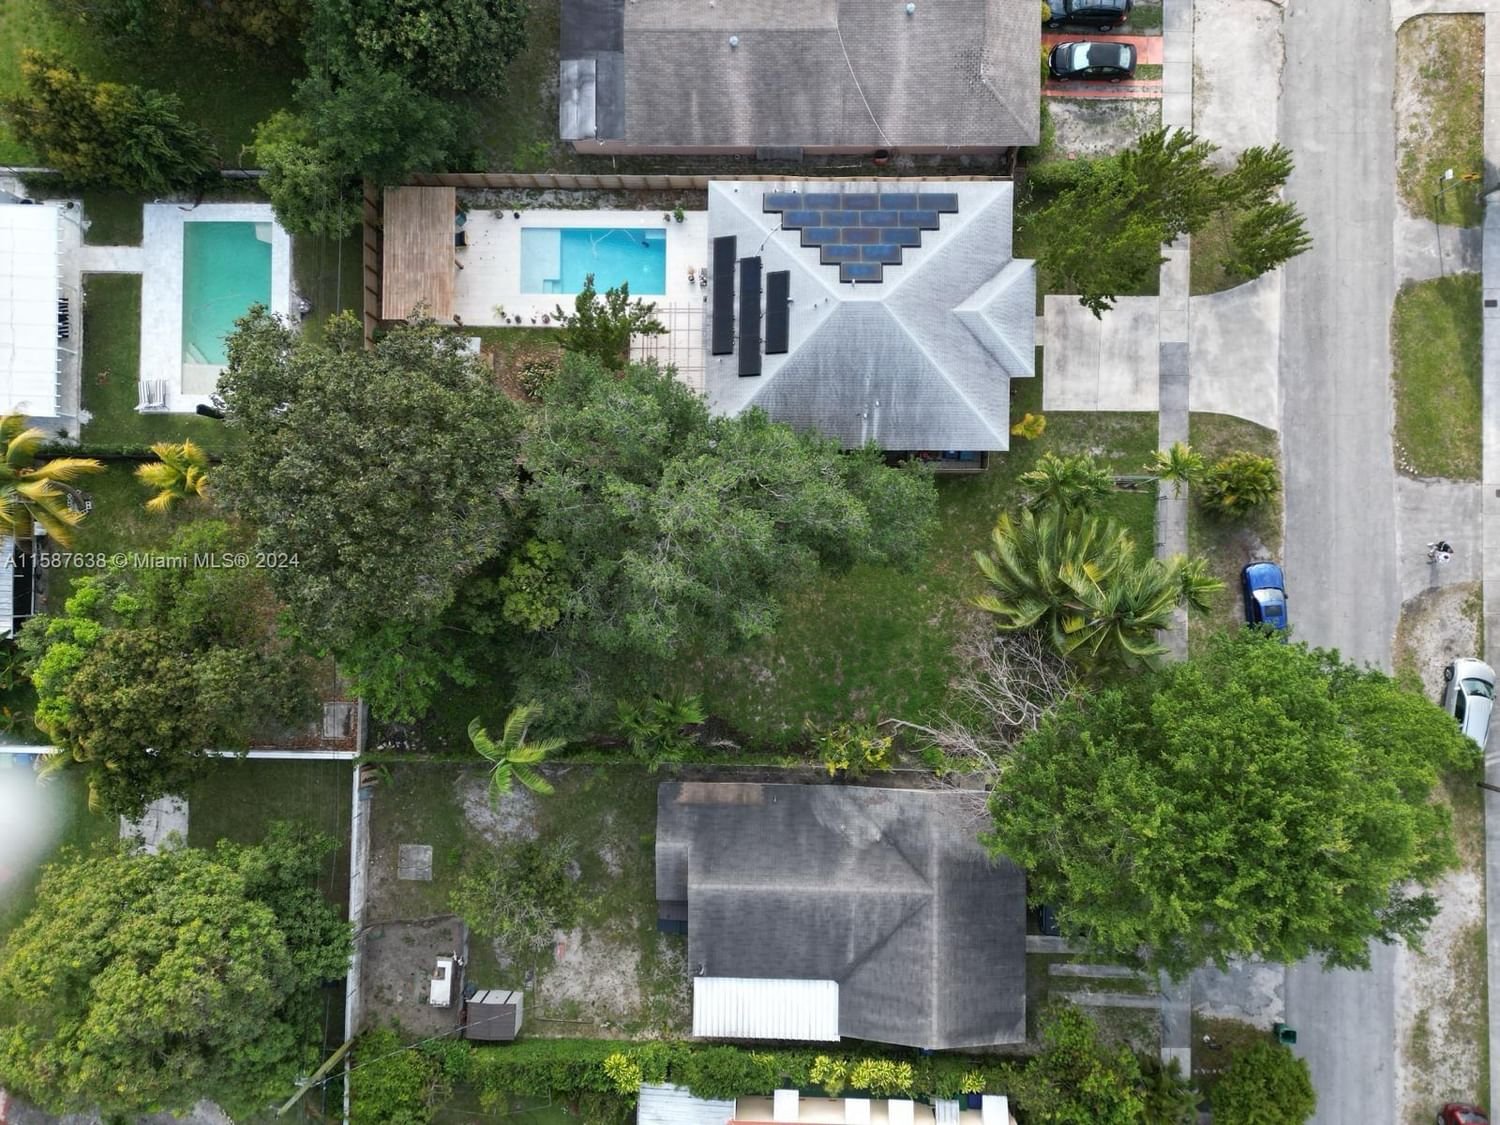 Real estate property located at 52 117th St, Miami-Dade County, LA PALOMA, Miami, FL